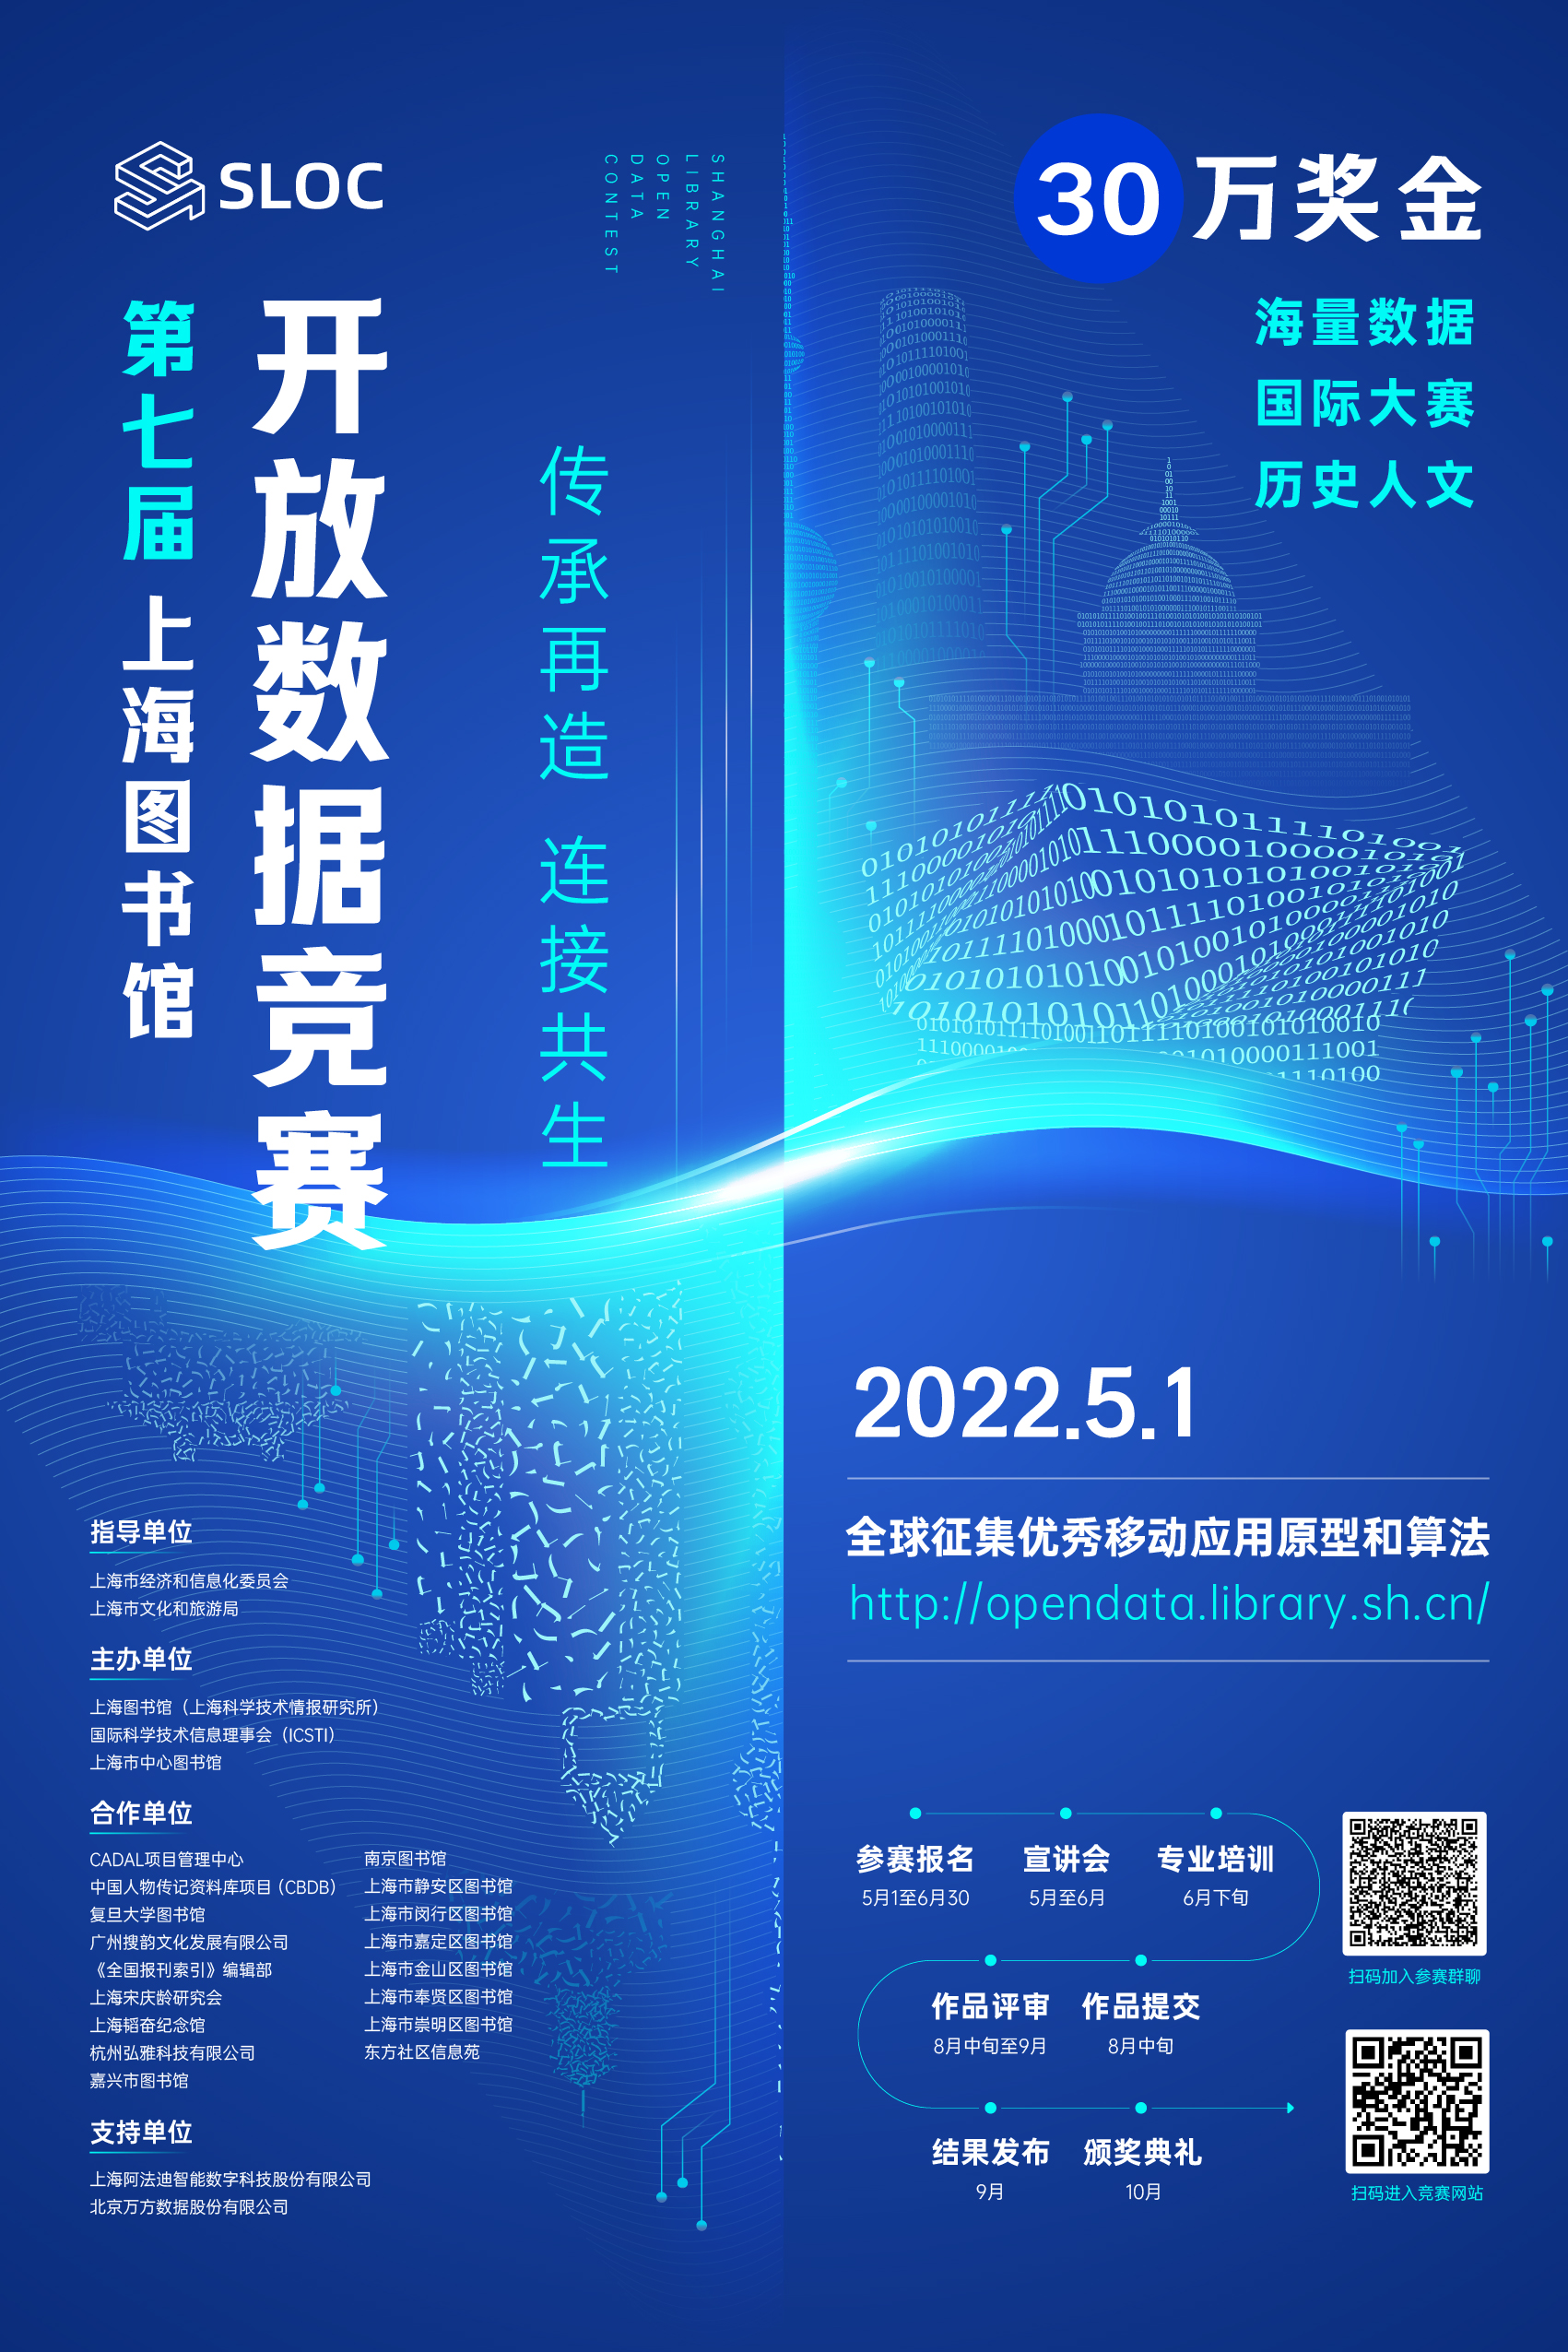 第七届上海图书馆开放数据竞赛